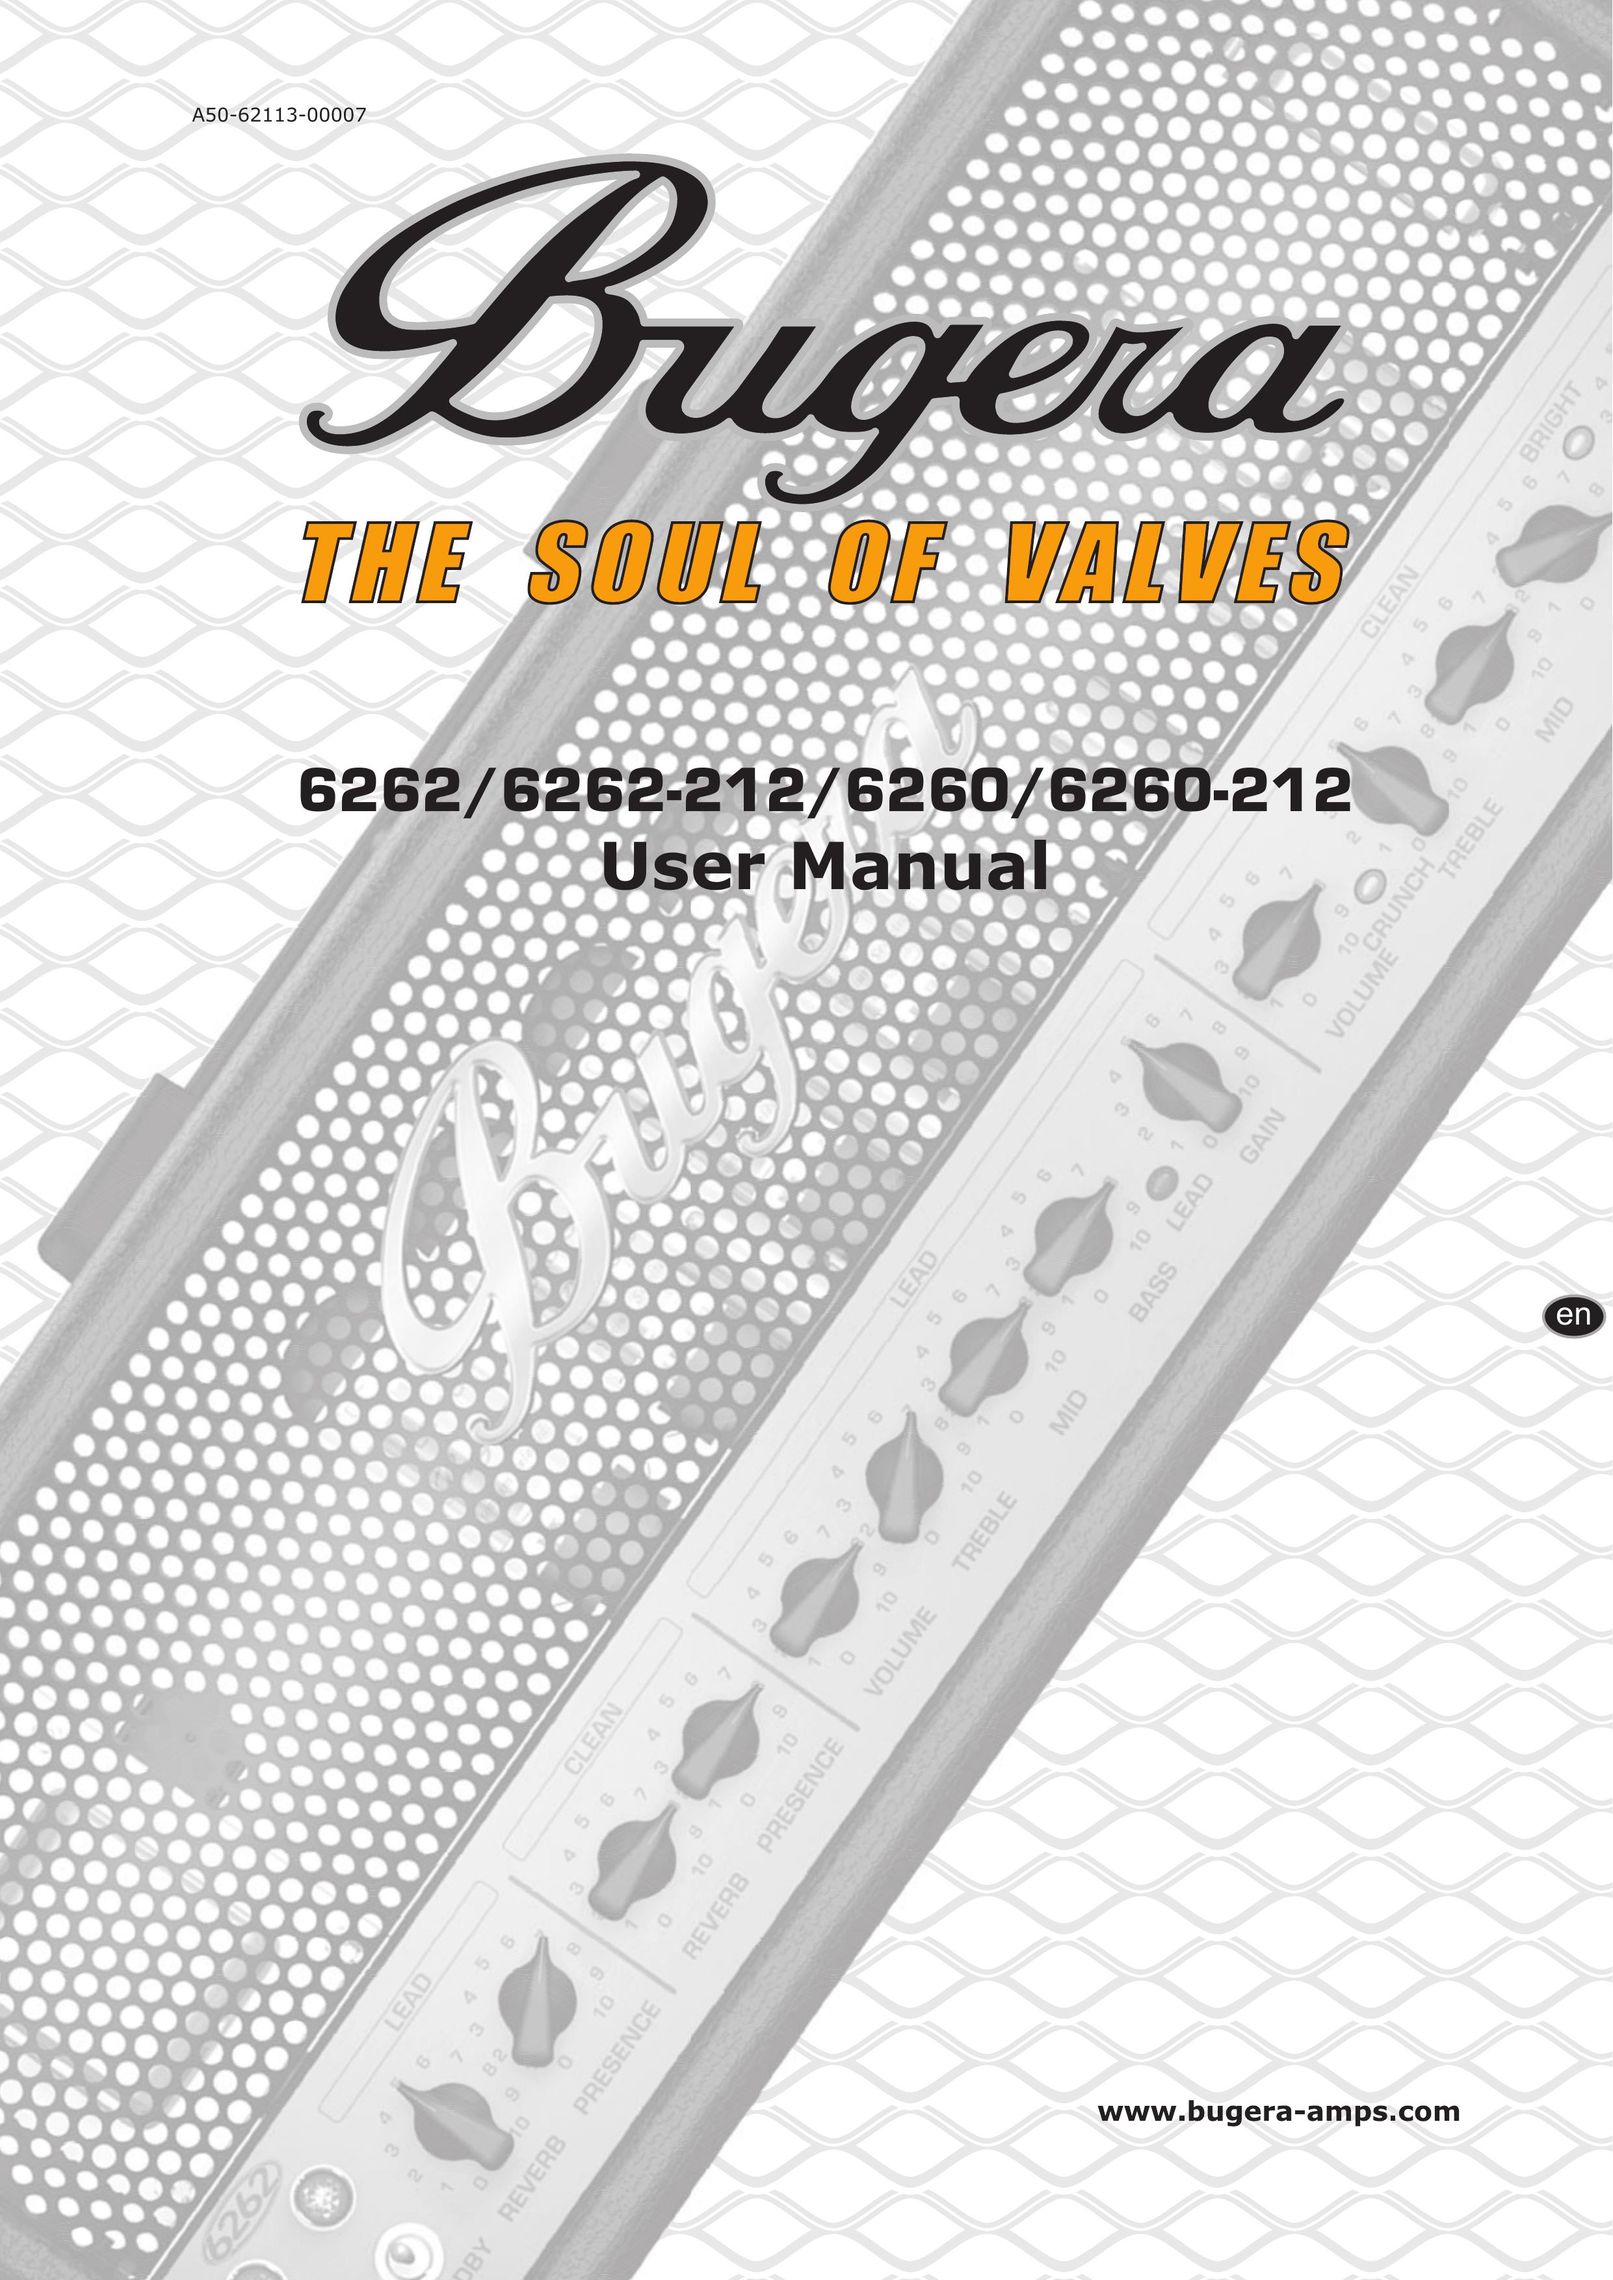 Behringer 6262-212 Stereo Amplifier User Manual